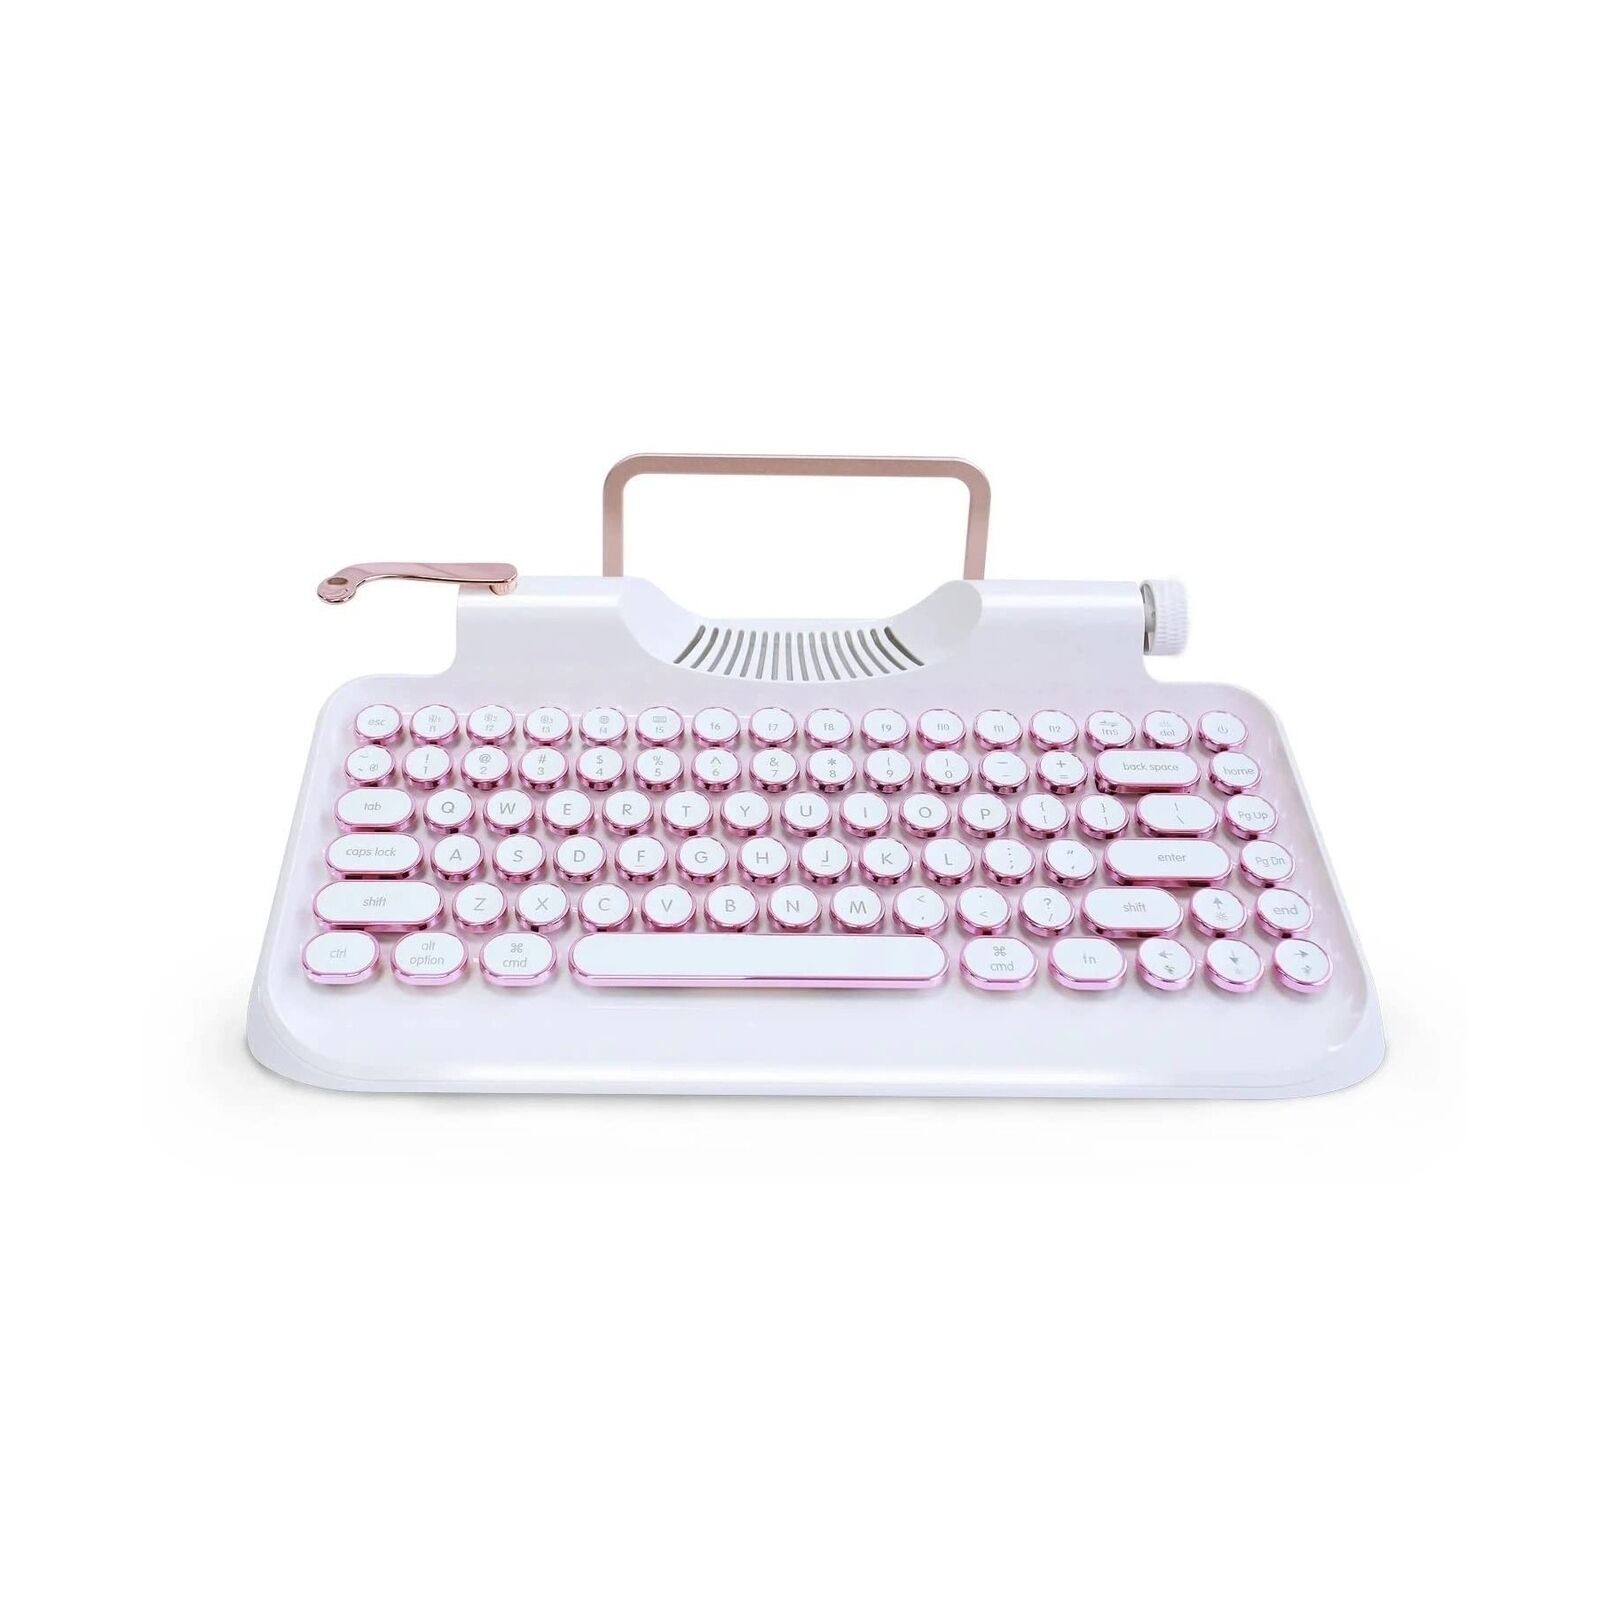 KNEWKEY RYMEK Typewriter Style Mechanical Wired & Wireless Keyboard with Tabl...